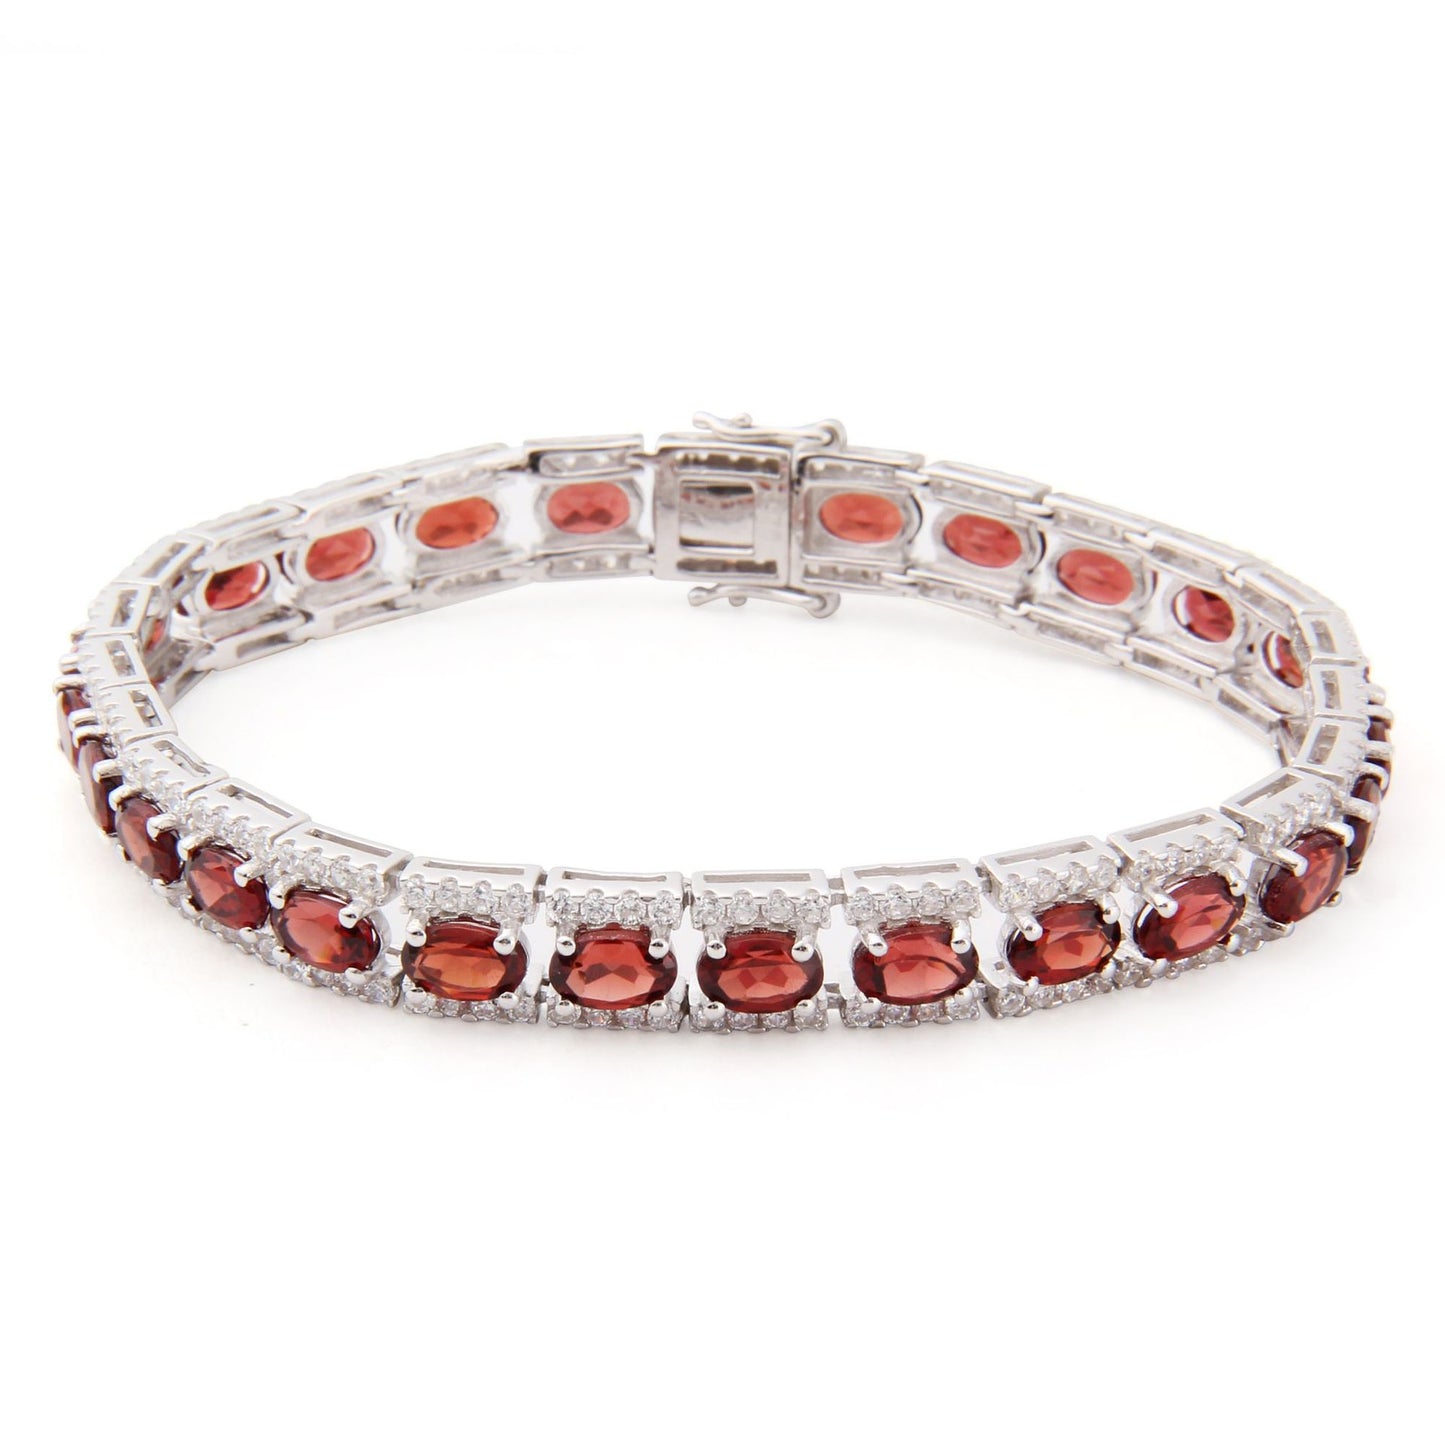 Oval Natural Gemstones Beading Silver Bracelet